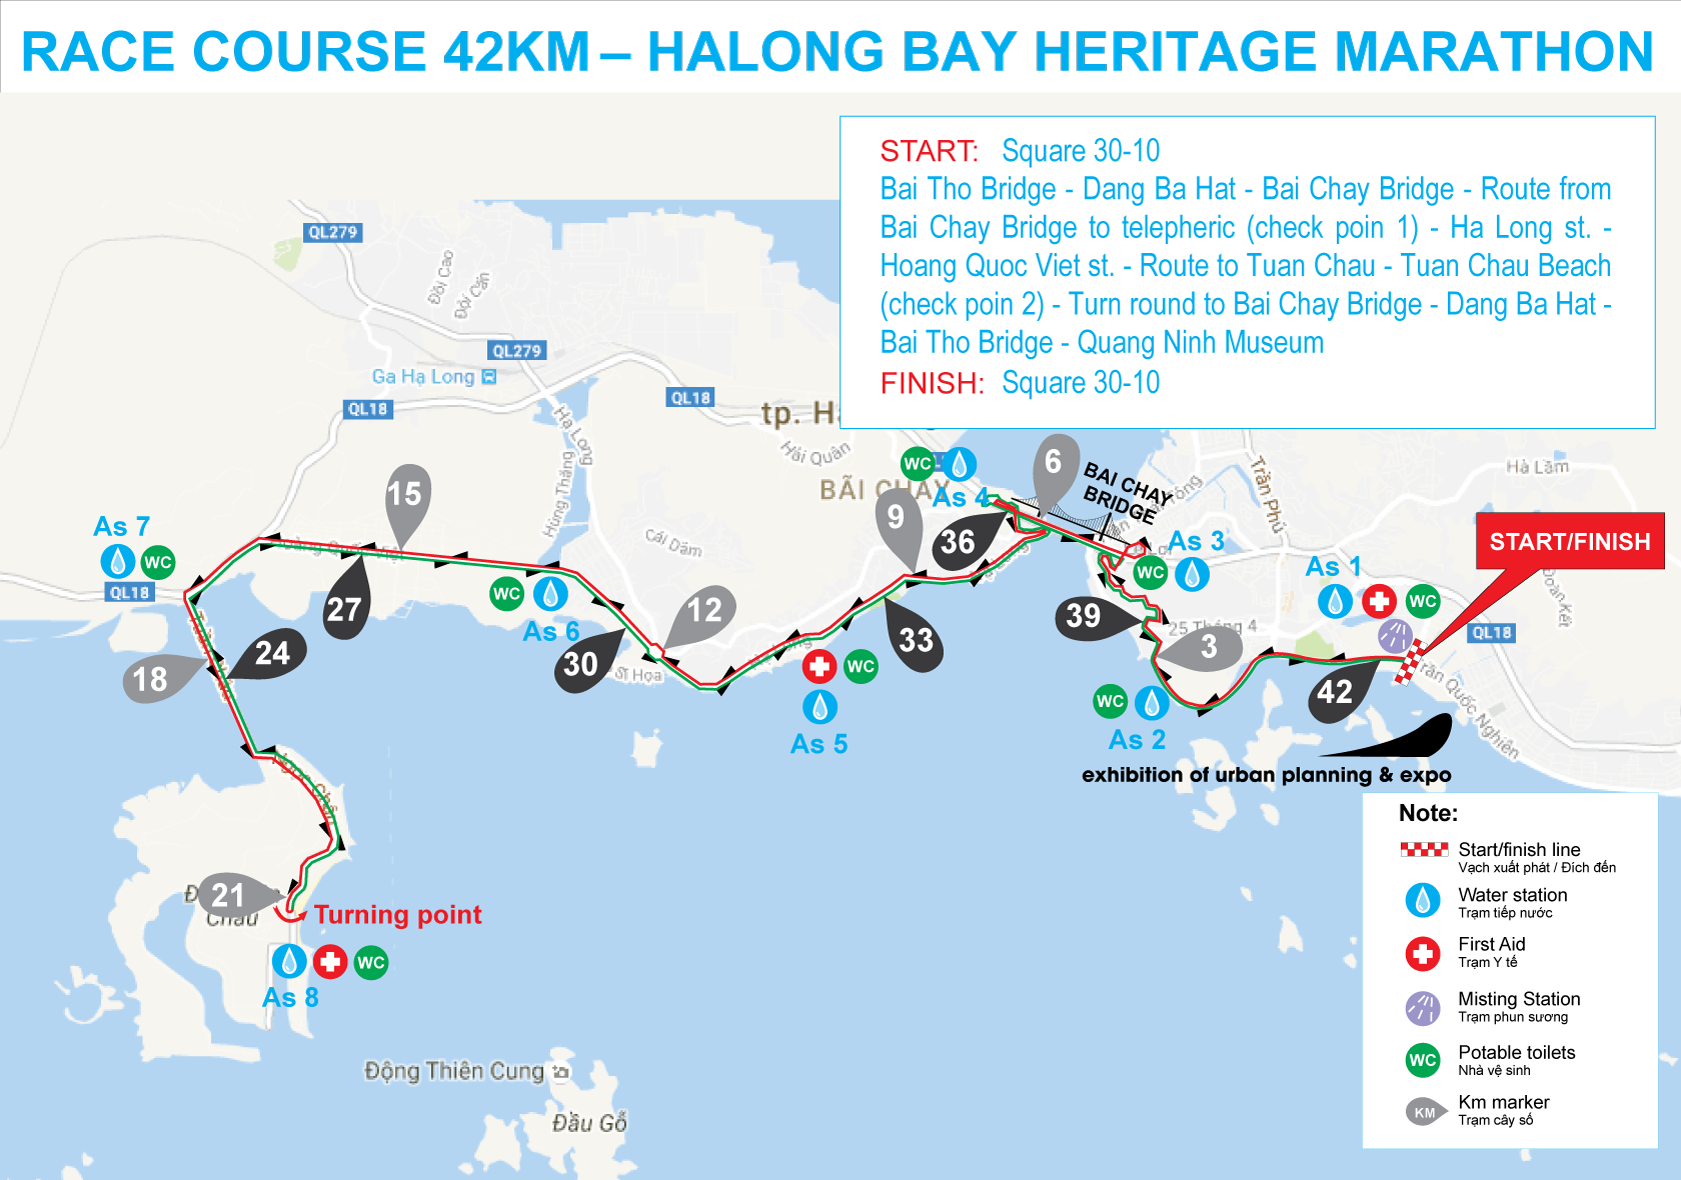 Sơ đồ đường chạy 42km Halong Bay Heritage Marathon 2017